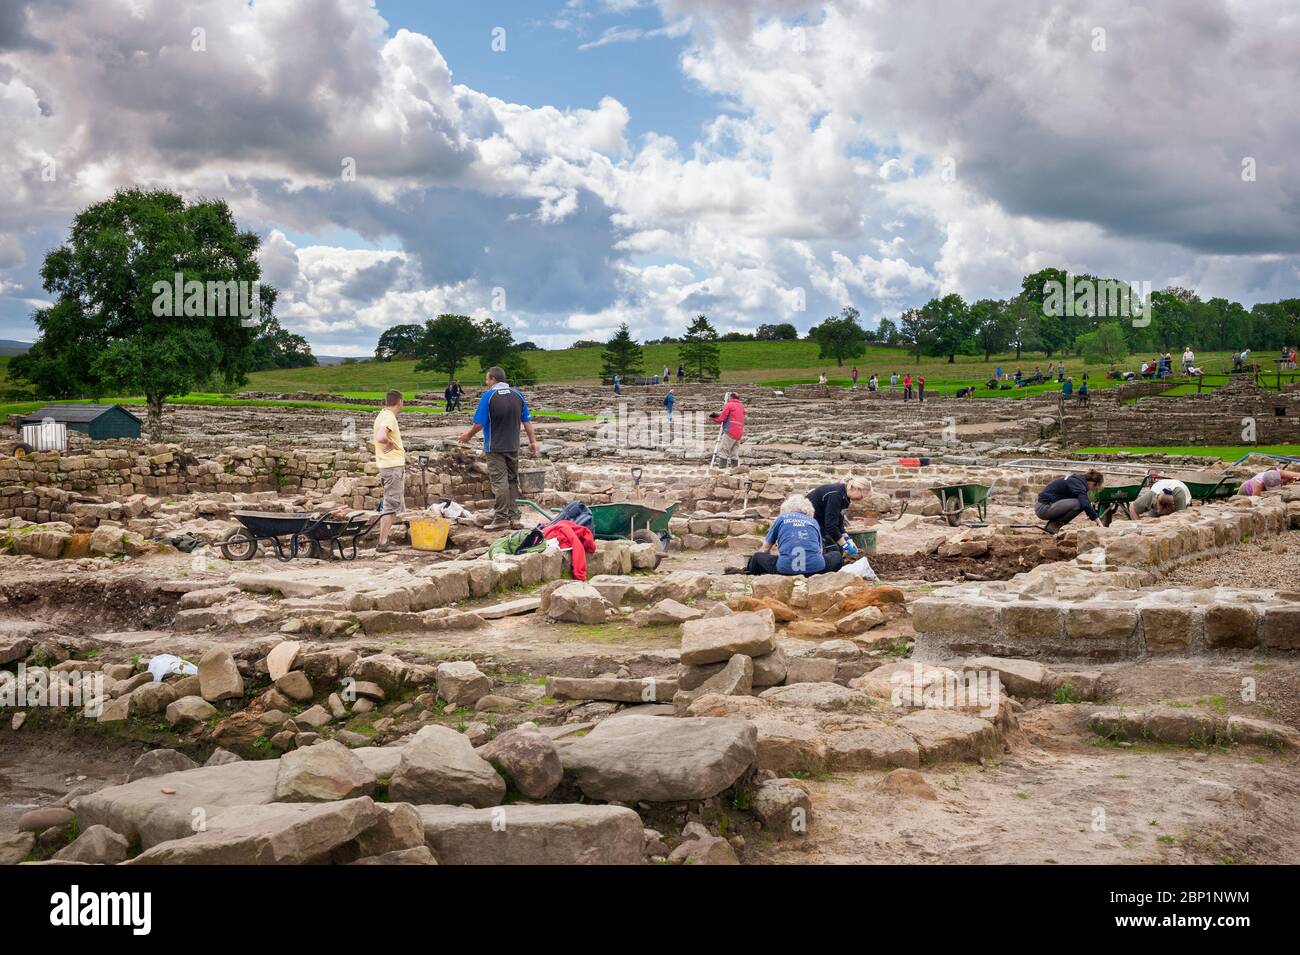 Fouilles archéologiques - les archéologues entreprennent des fouilles au fort romain de Vindolanda, près du mur d'Hadrien, dans le Northumberland. Banque D'Images